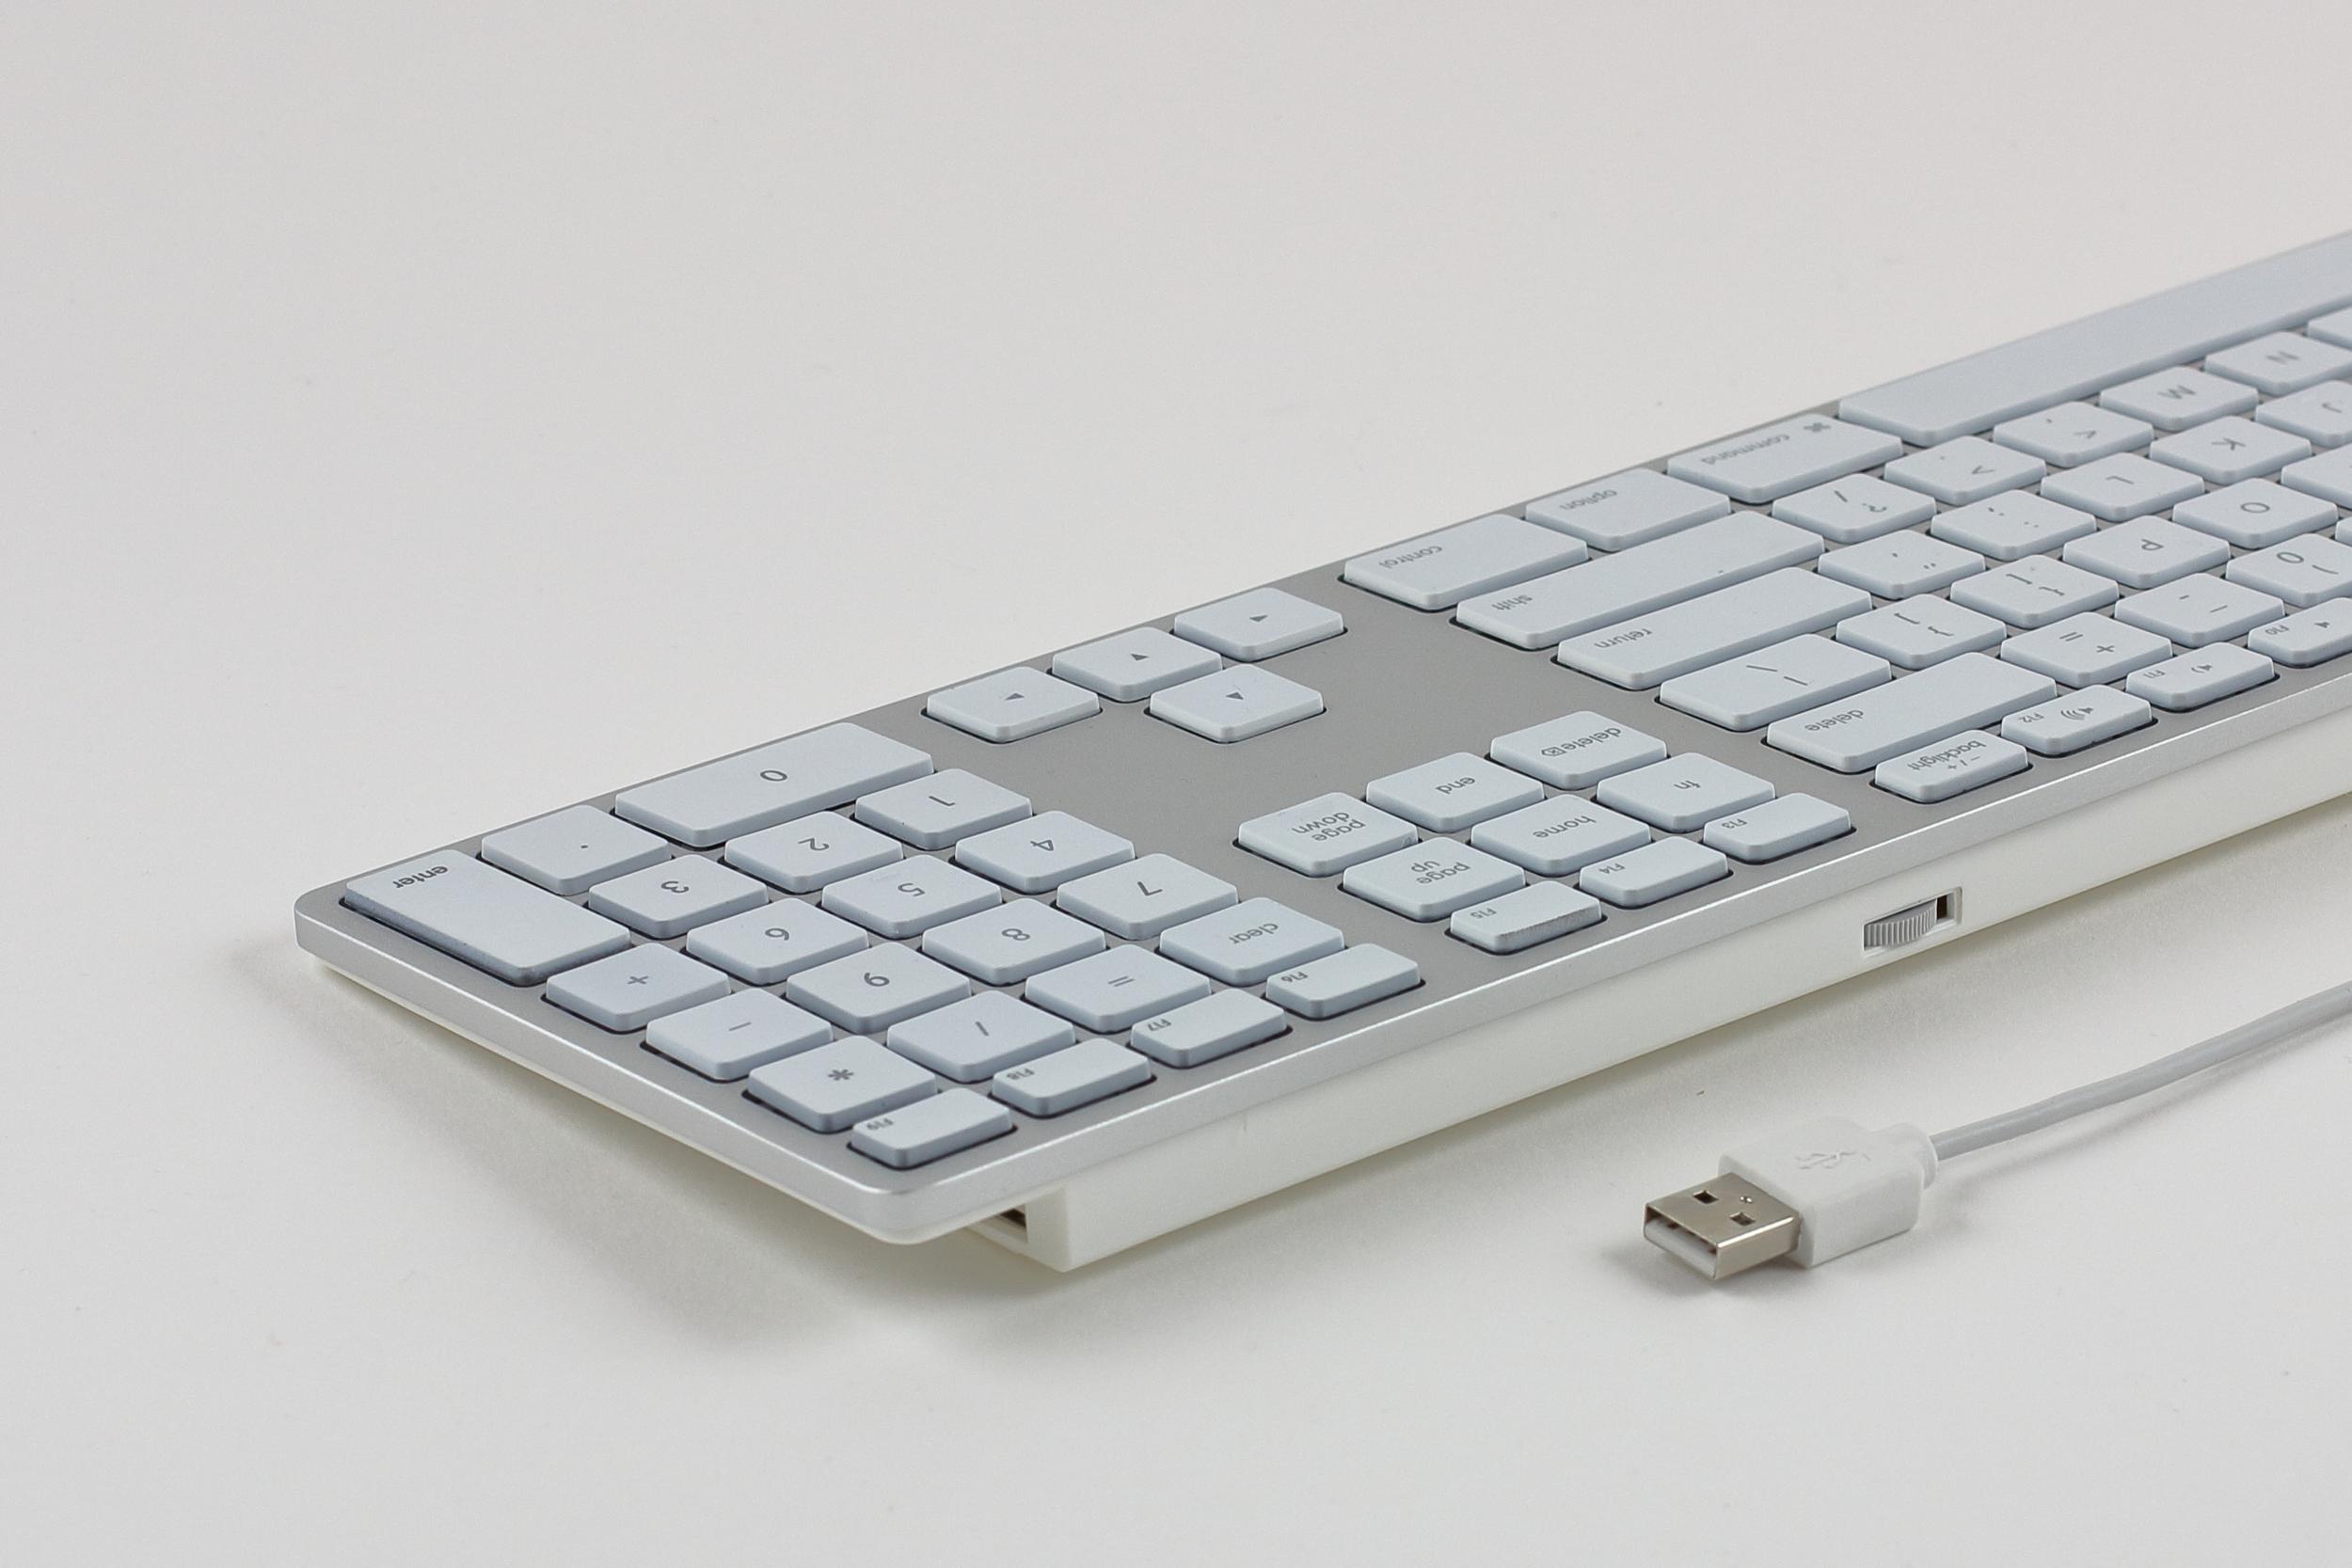 Matias Aluminium Erweiterte USB Tastatur mit Hintergrundbeleuchtung DEUTSCH für Mac OS - Silber mit weißen Tasten